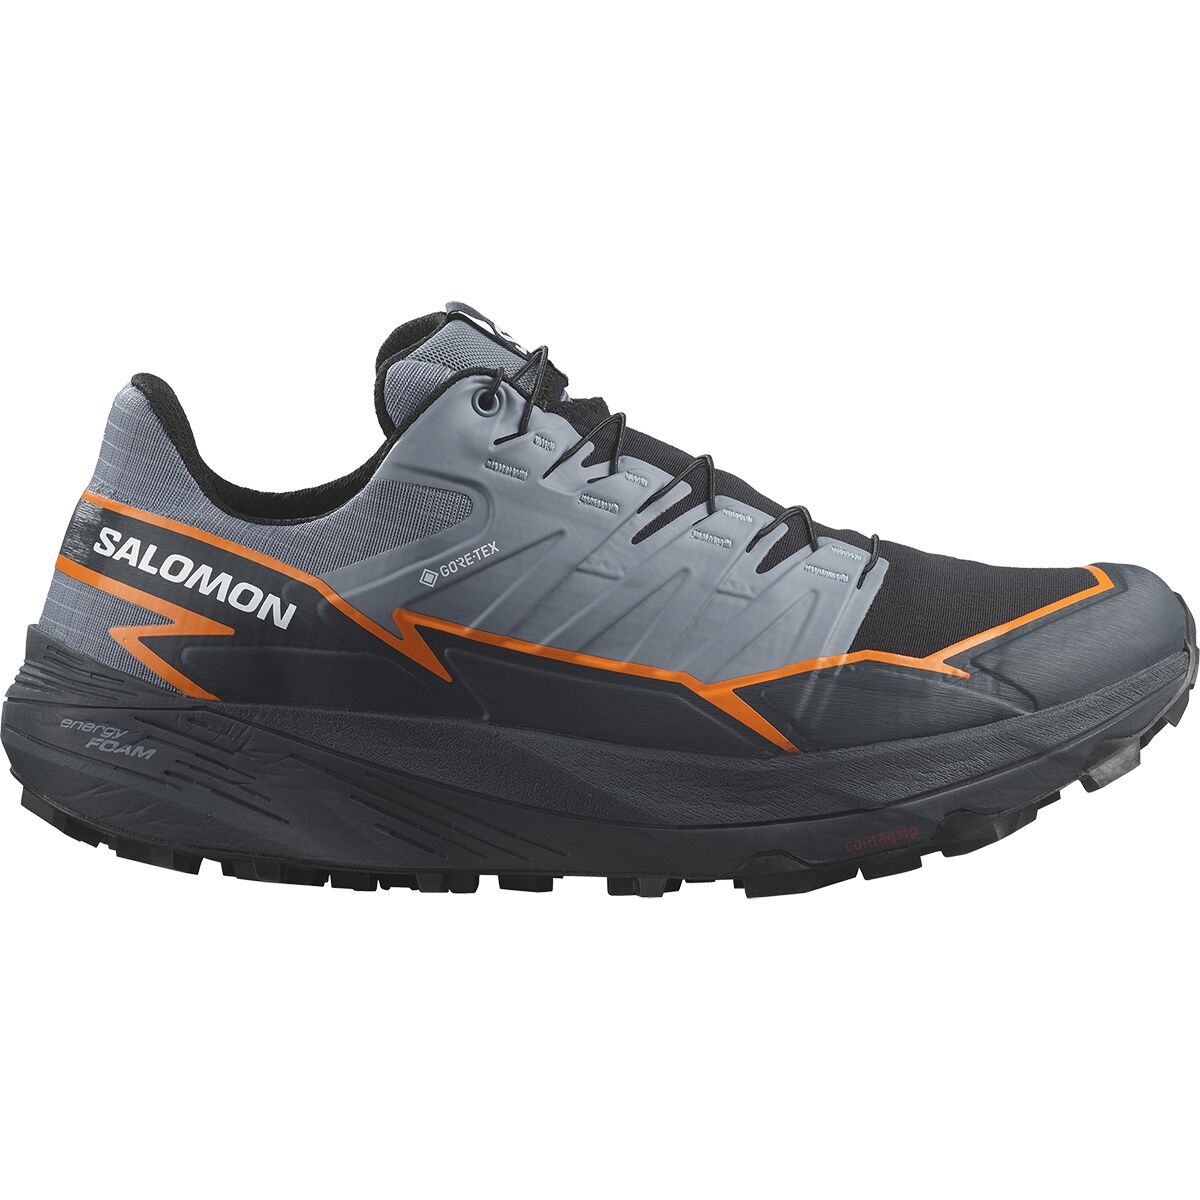 Thundercross GORE-TEX Trail Running Shoe - Men